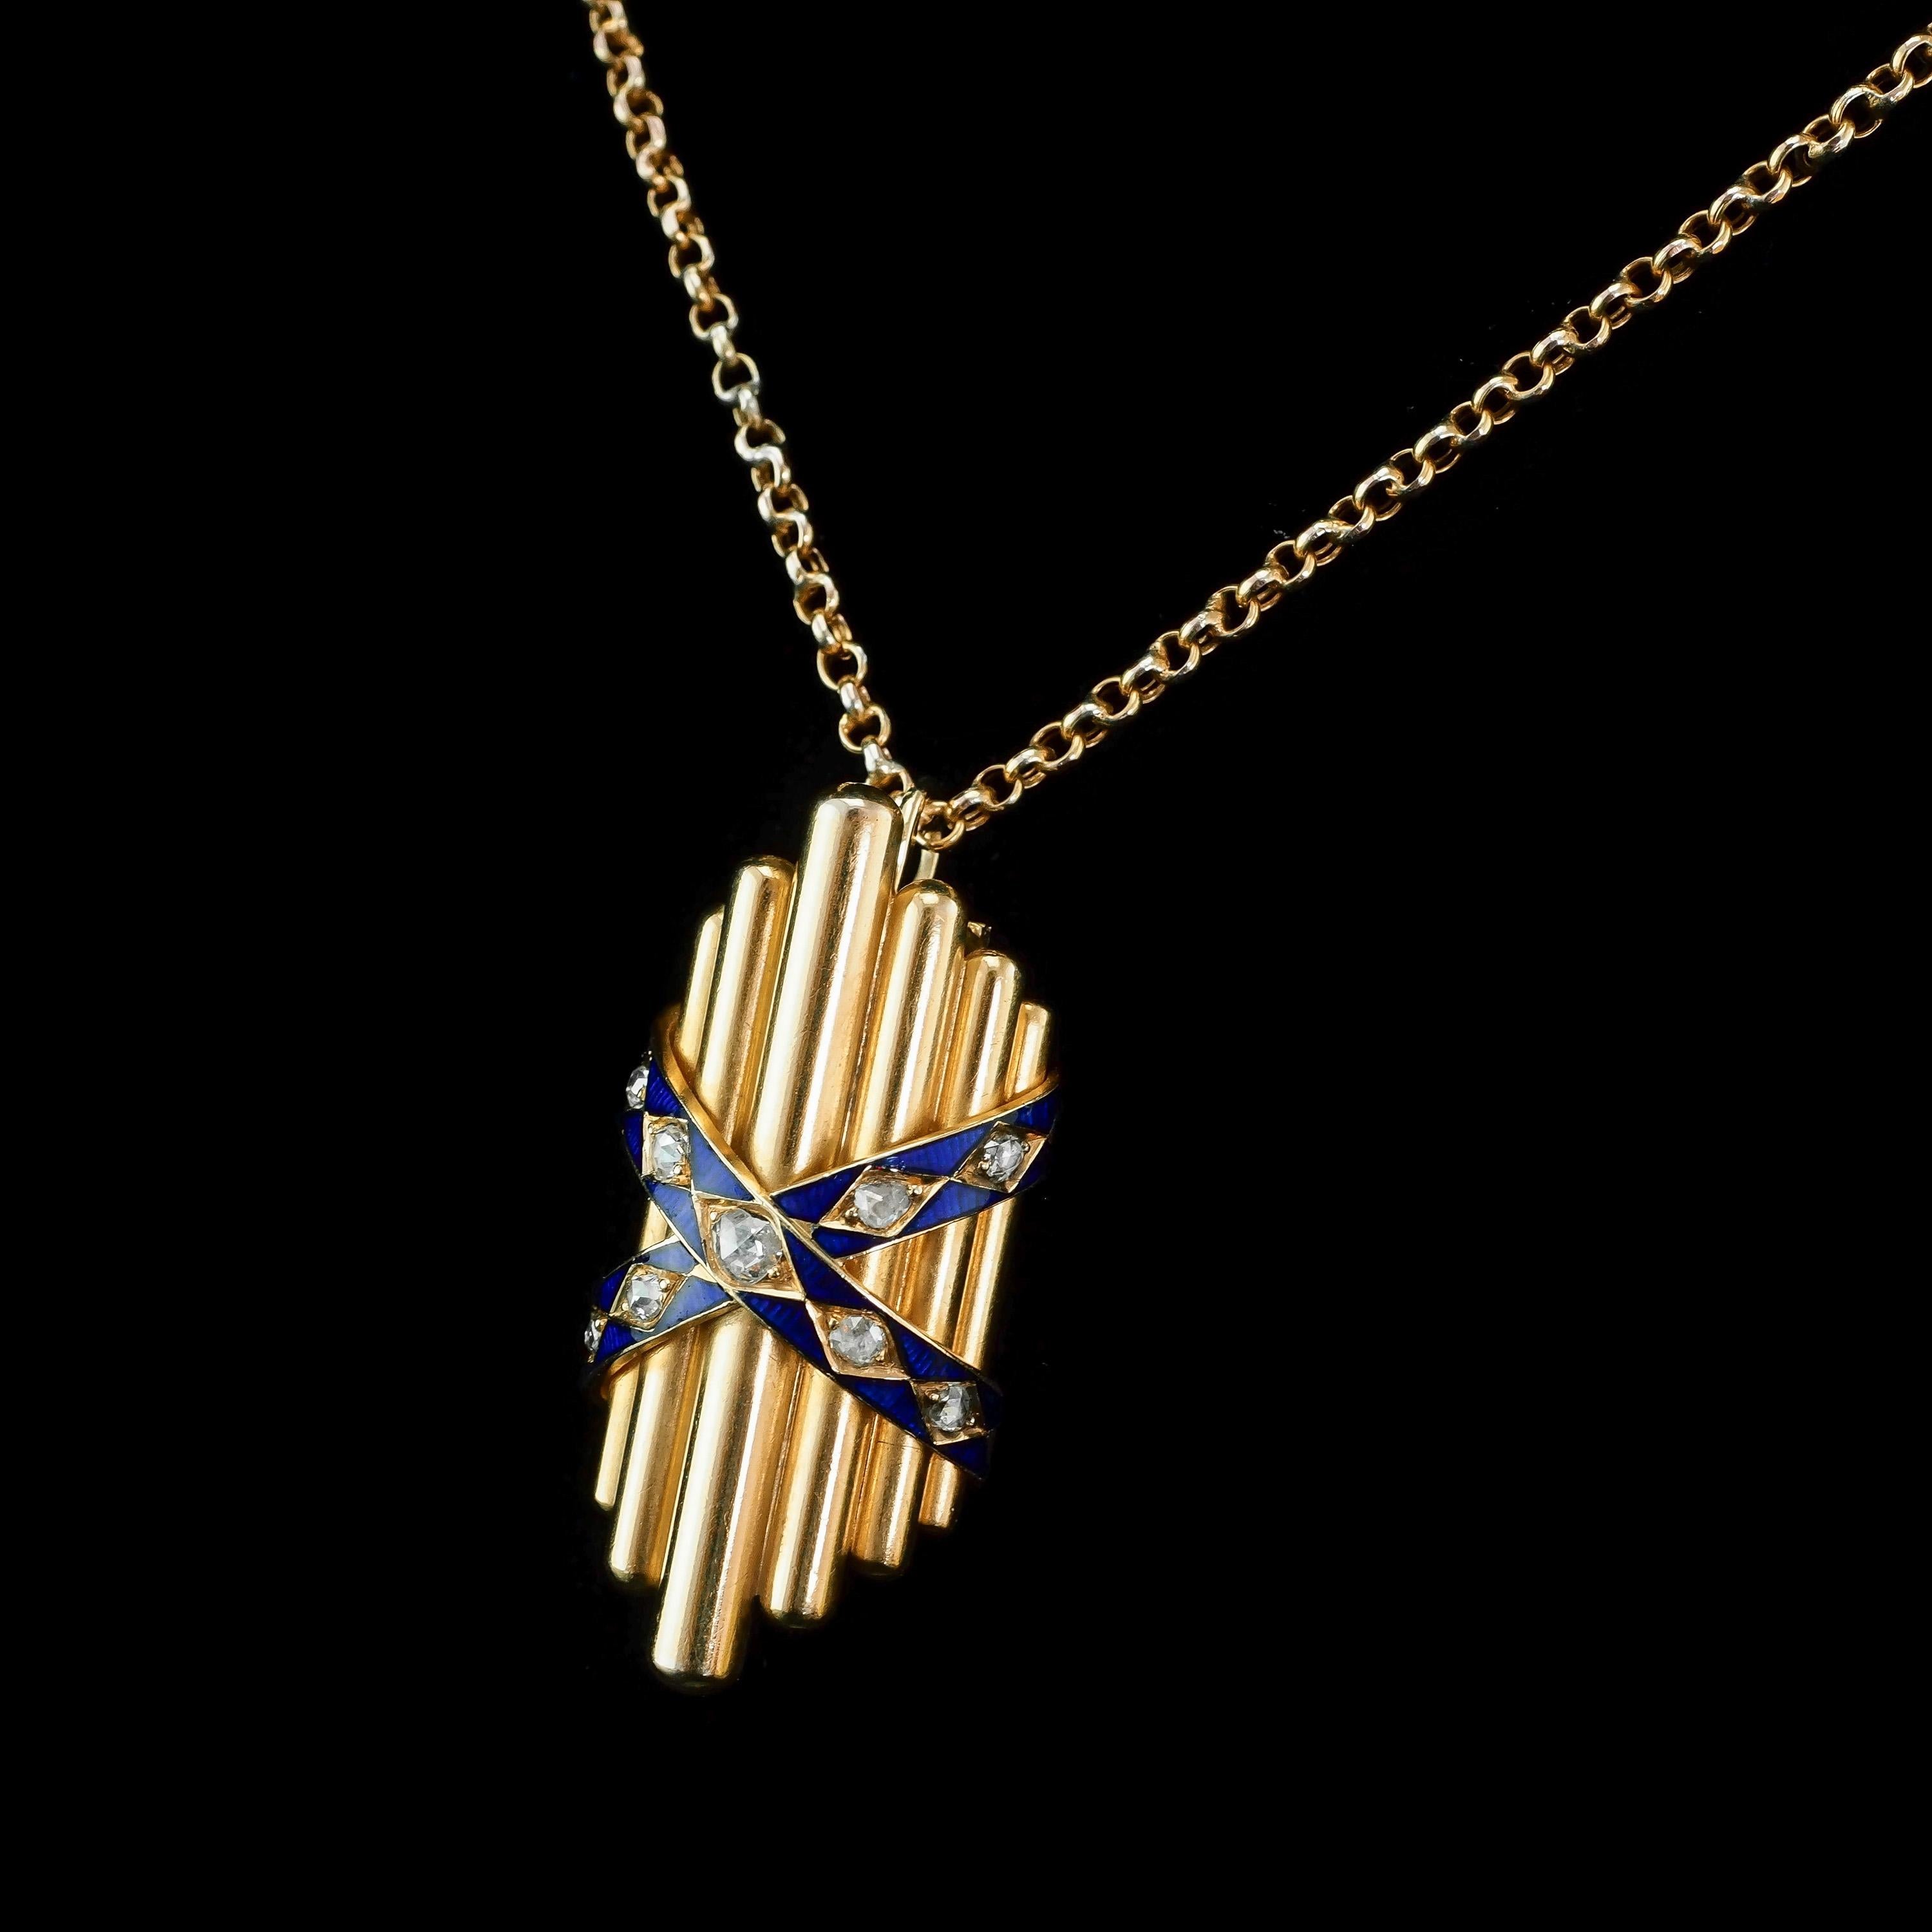 Antique 18K Gold Diamond Rose Cut Pendant Necklace with Blue Enamel - c.1880 For Sale 2